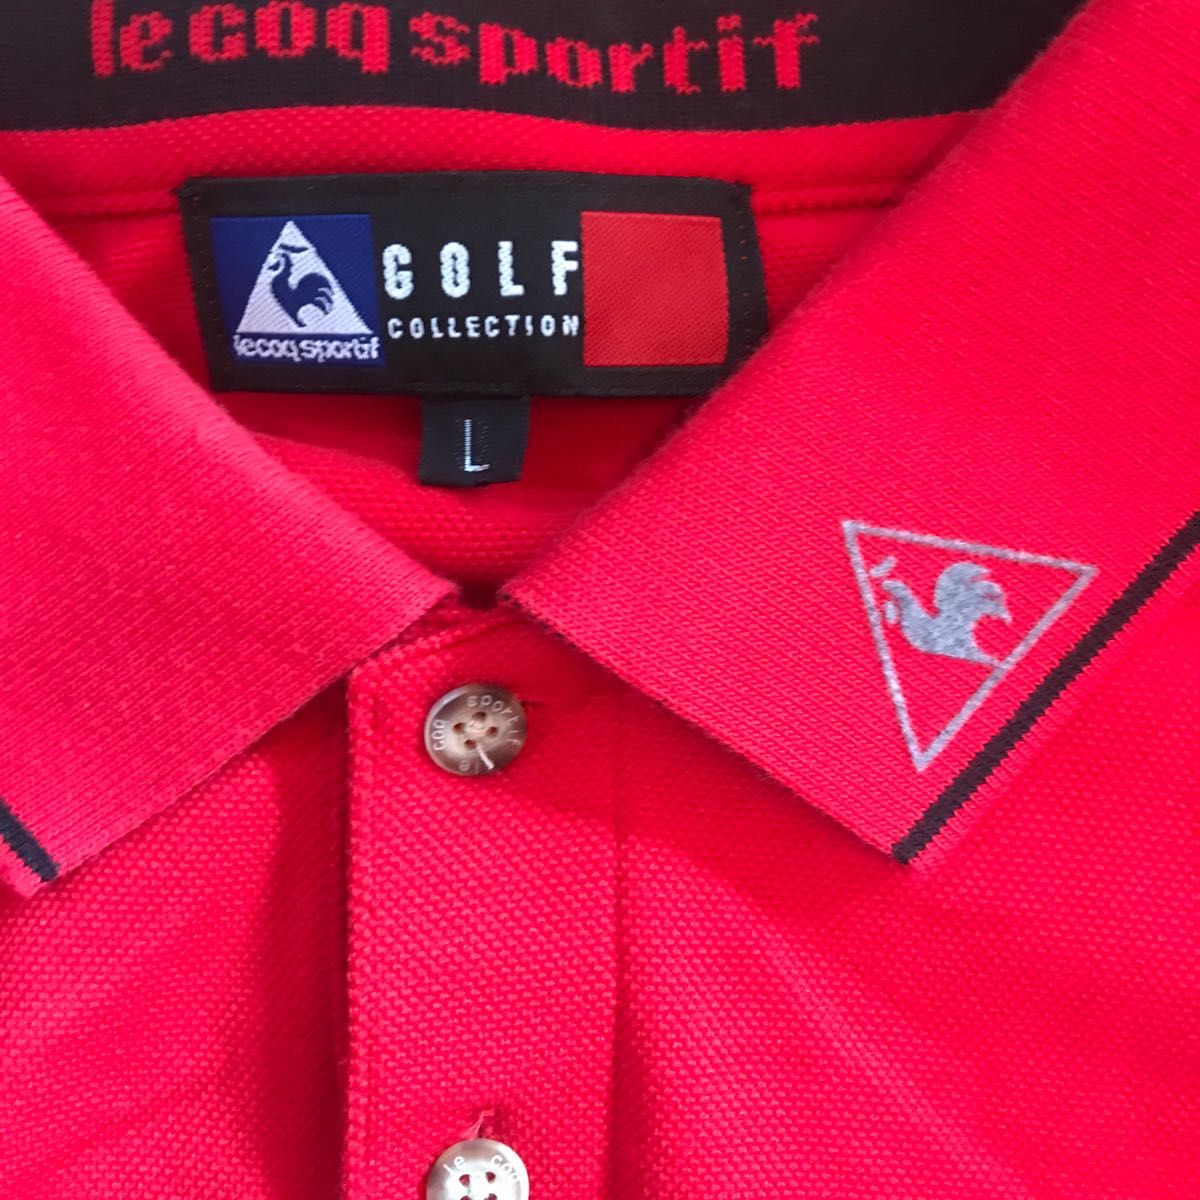 ルコック(lecoqsportif)長袖ゴルフポロシャツ(QG1007)赤メンズLサイズ中古品